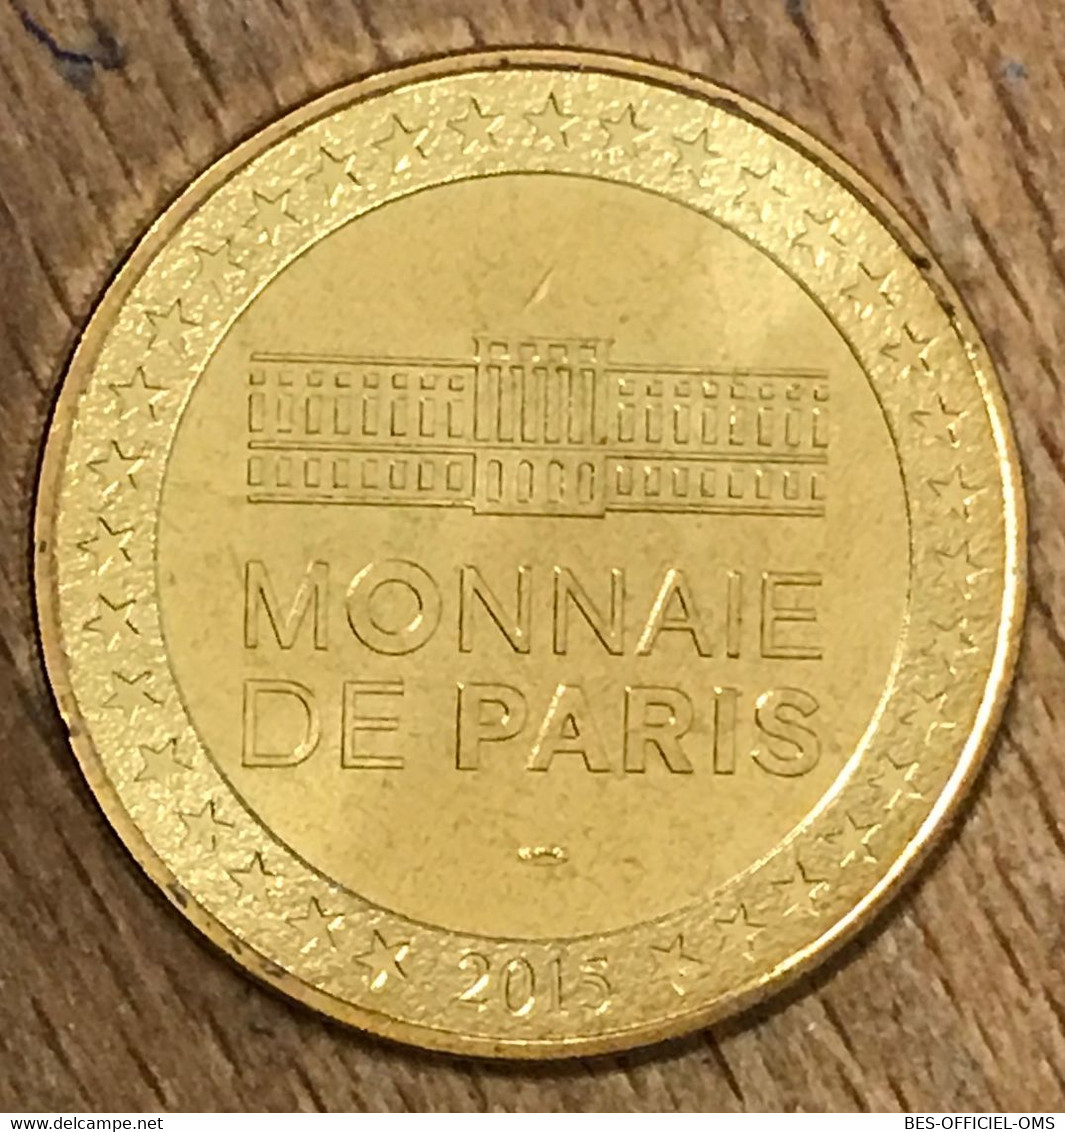 75009 PARIS LE CARRÉ D'ENCRE LA POSTE LA CHÈVRE MDP 2015 MEDAILLE MONNAIE DE PARIS JETON TOURISTIQUE MEDALS COINS TOKENS - 2015